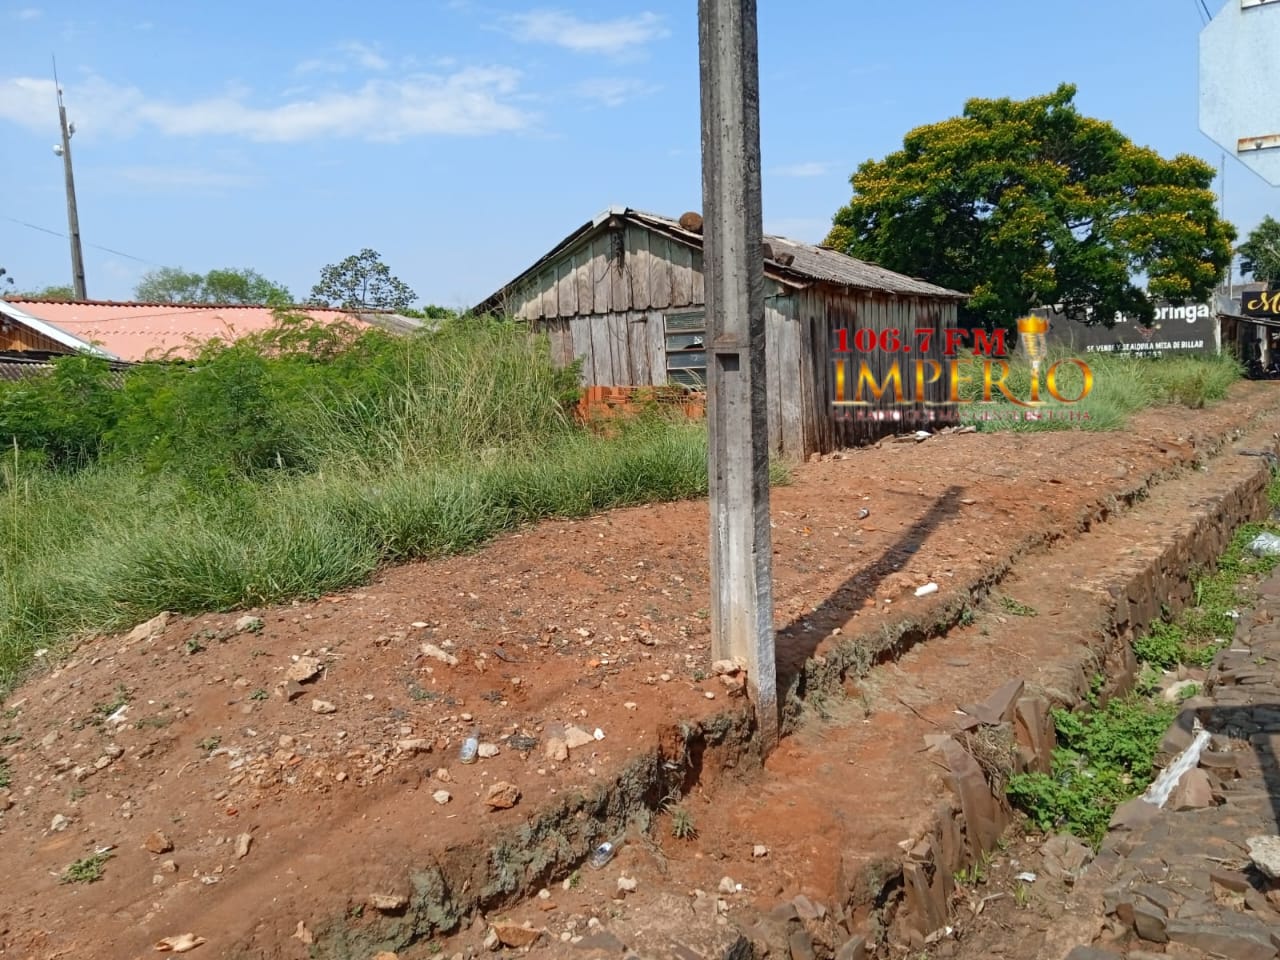 Casa abandonada en el barrio Guaraní sirve como aguantadero de adictos y delincuentes